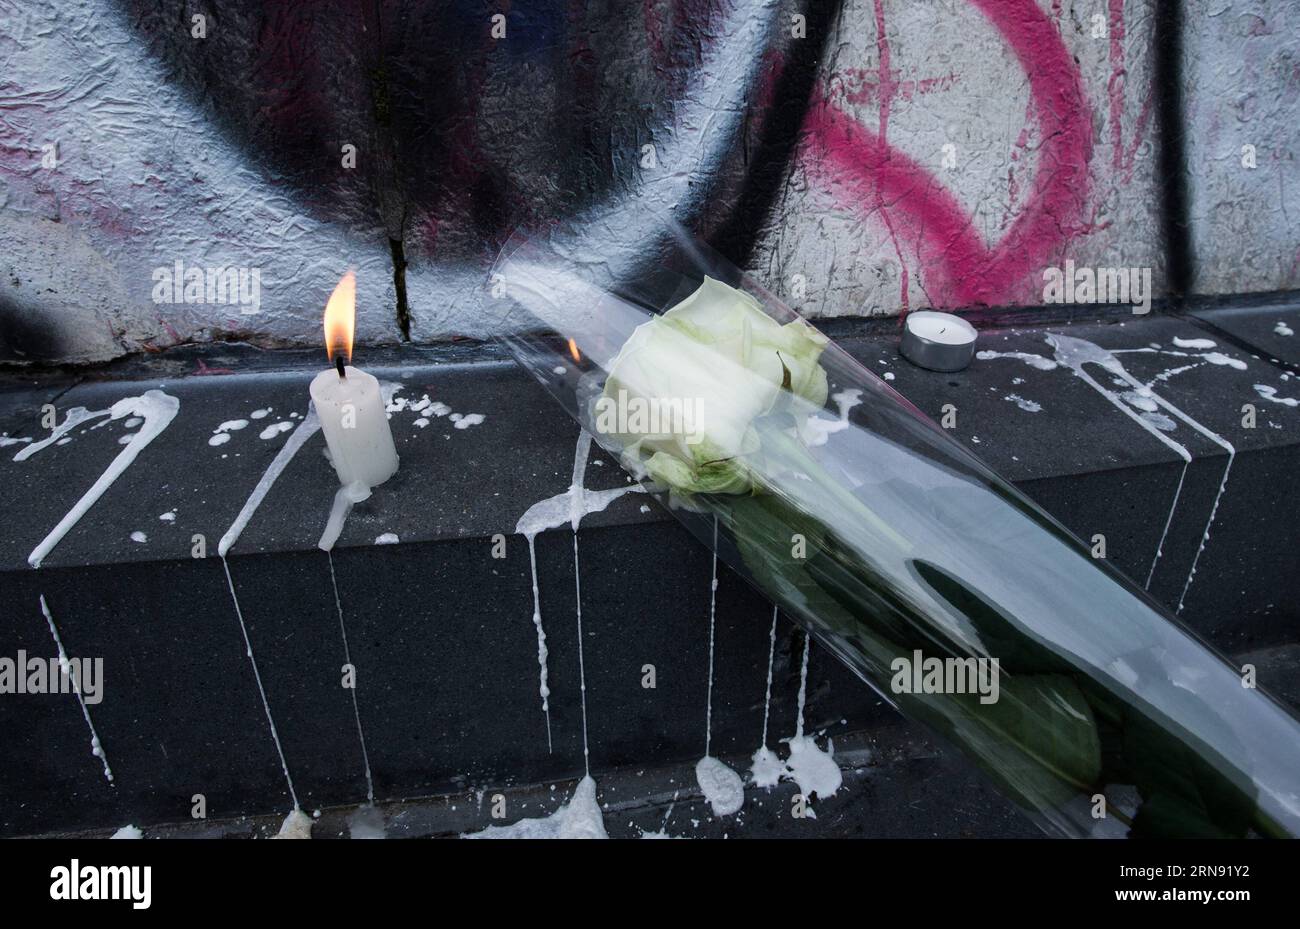 (151114) -- PARIS, 14 novembre 2015 -- des bougies et une fleur sont placées devant le restaurant le petit Cambodge où une attaque a eu lieu l'autre jour à Paris, France, le 14 novembre 2015. Le président français François Hollande a annoncé samedi un deuil national de trois jours. (Zjy) FRANCE-PARIS-ATTACKS-DEUIL XuxJinquan PUBLICATIONxNOTxINxCHN 151114 Paris Nov 14 2015 bougies et une fleur sont placées devant le restaurant le petit Cambodge où attaquer s'est passé l'autre jour à Paris France Nov 14 2015 le président français François Hollande a annoncé un deuil national de trois jours LE samedi Banque D'Images